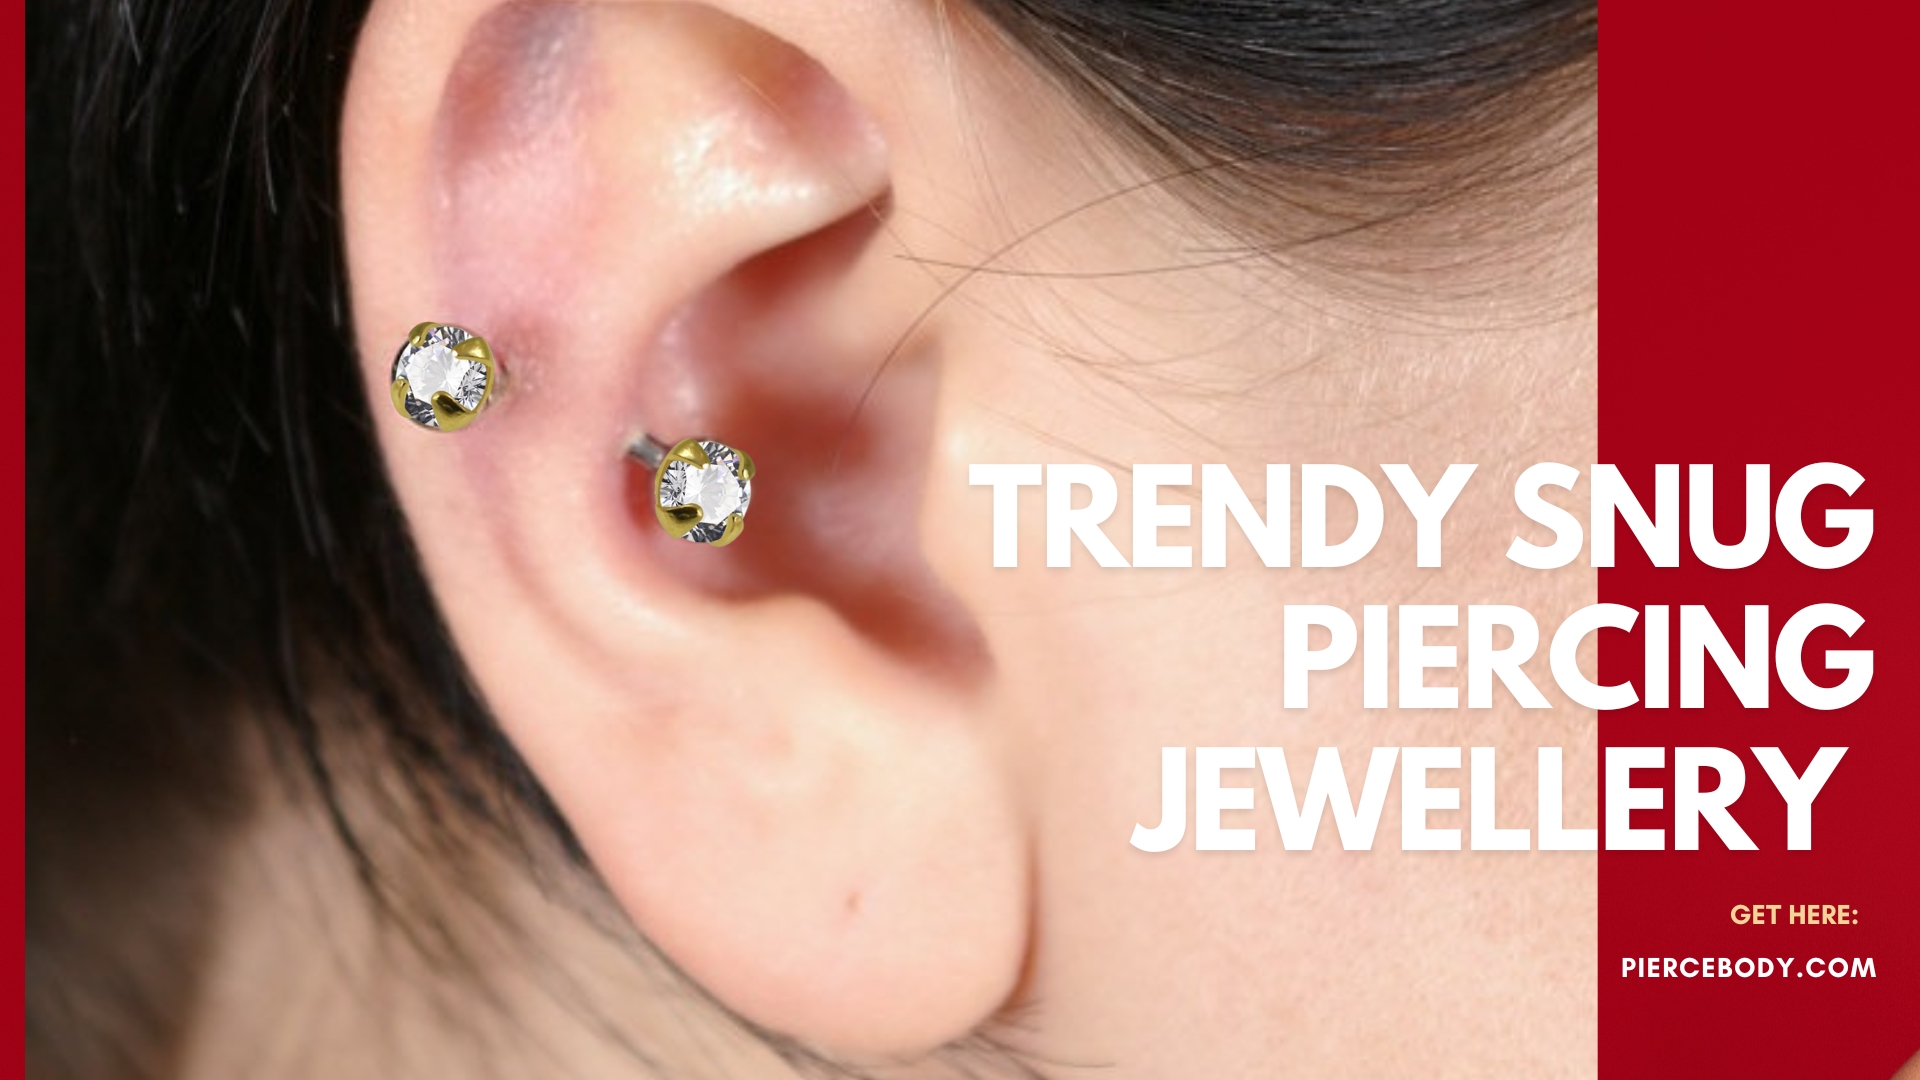 Get the Scoop on Trendy Snug Piercing Jewellery